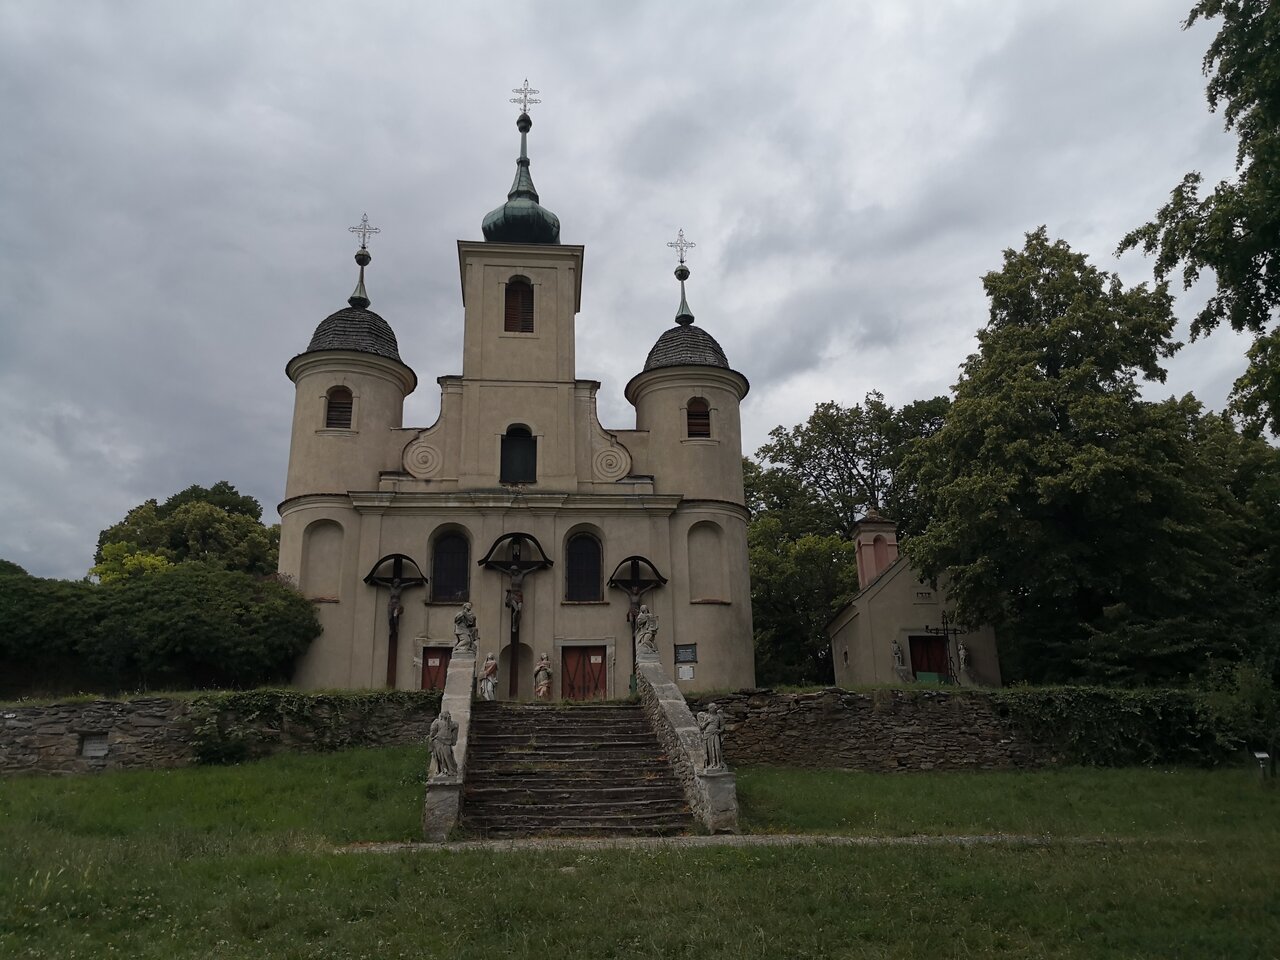 Kálvária Church, Kőszeg